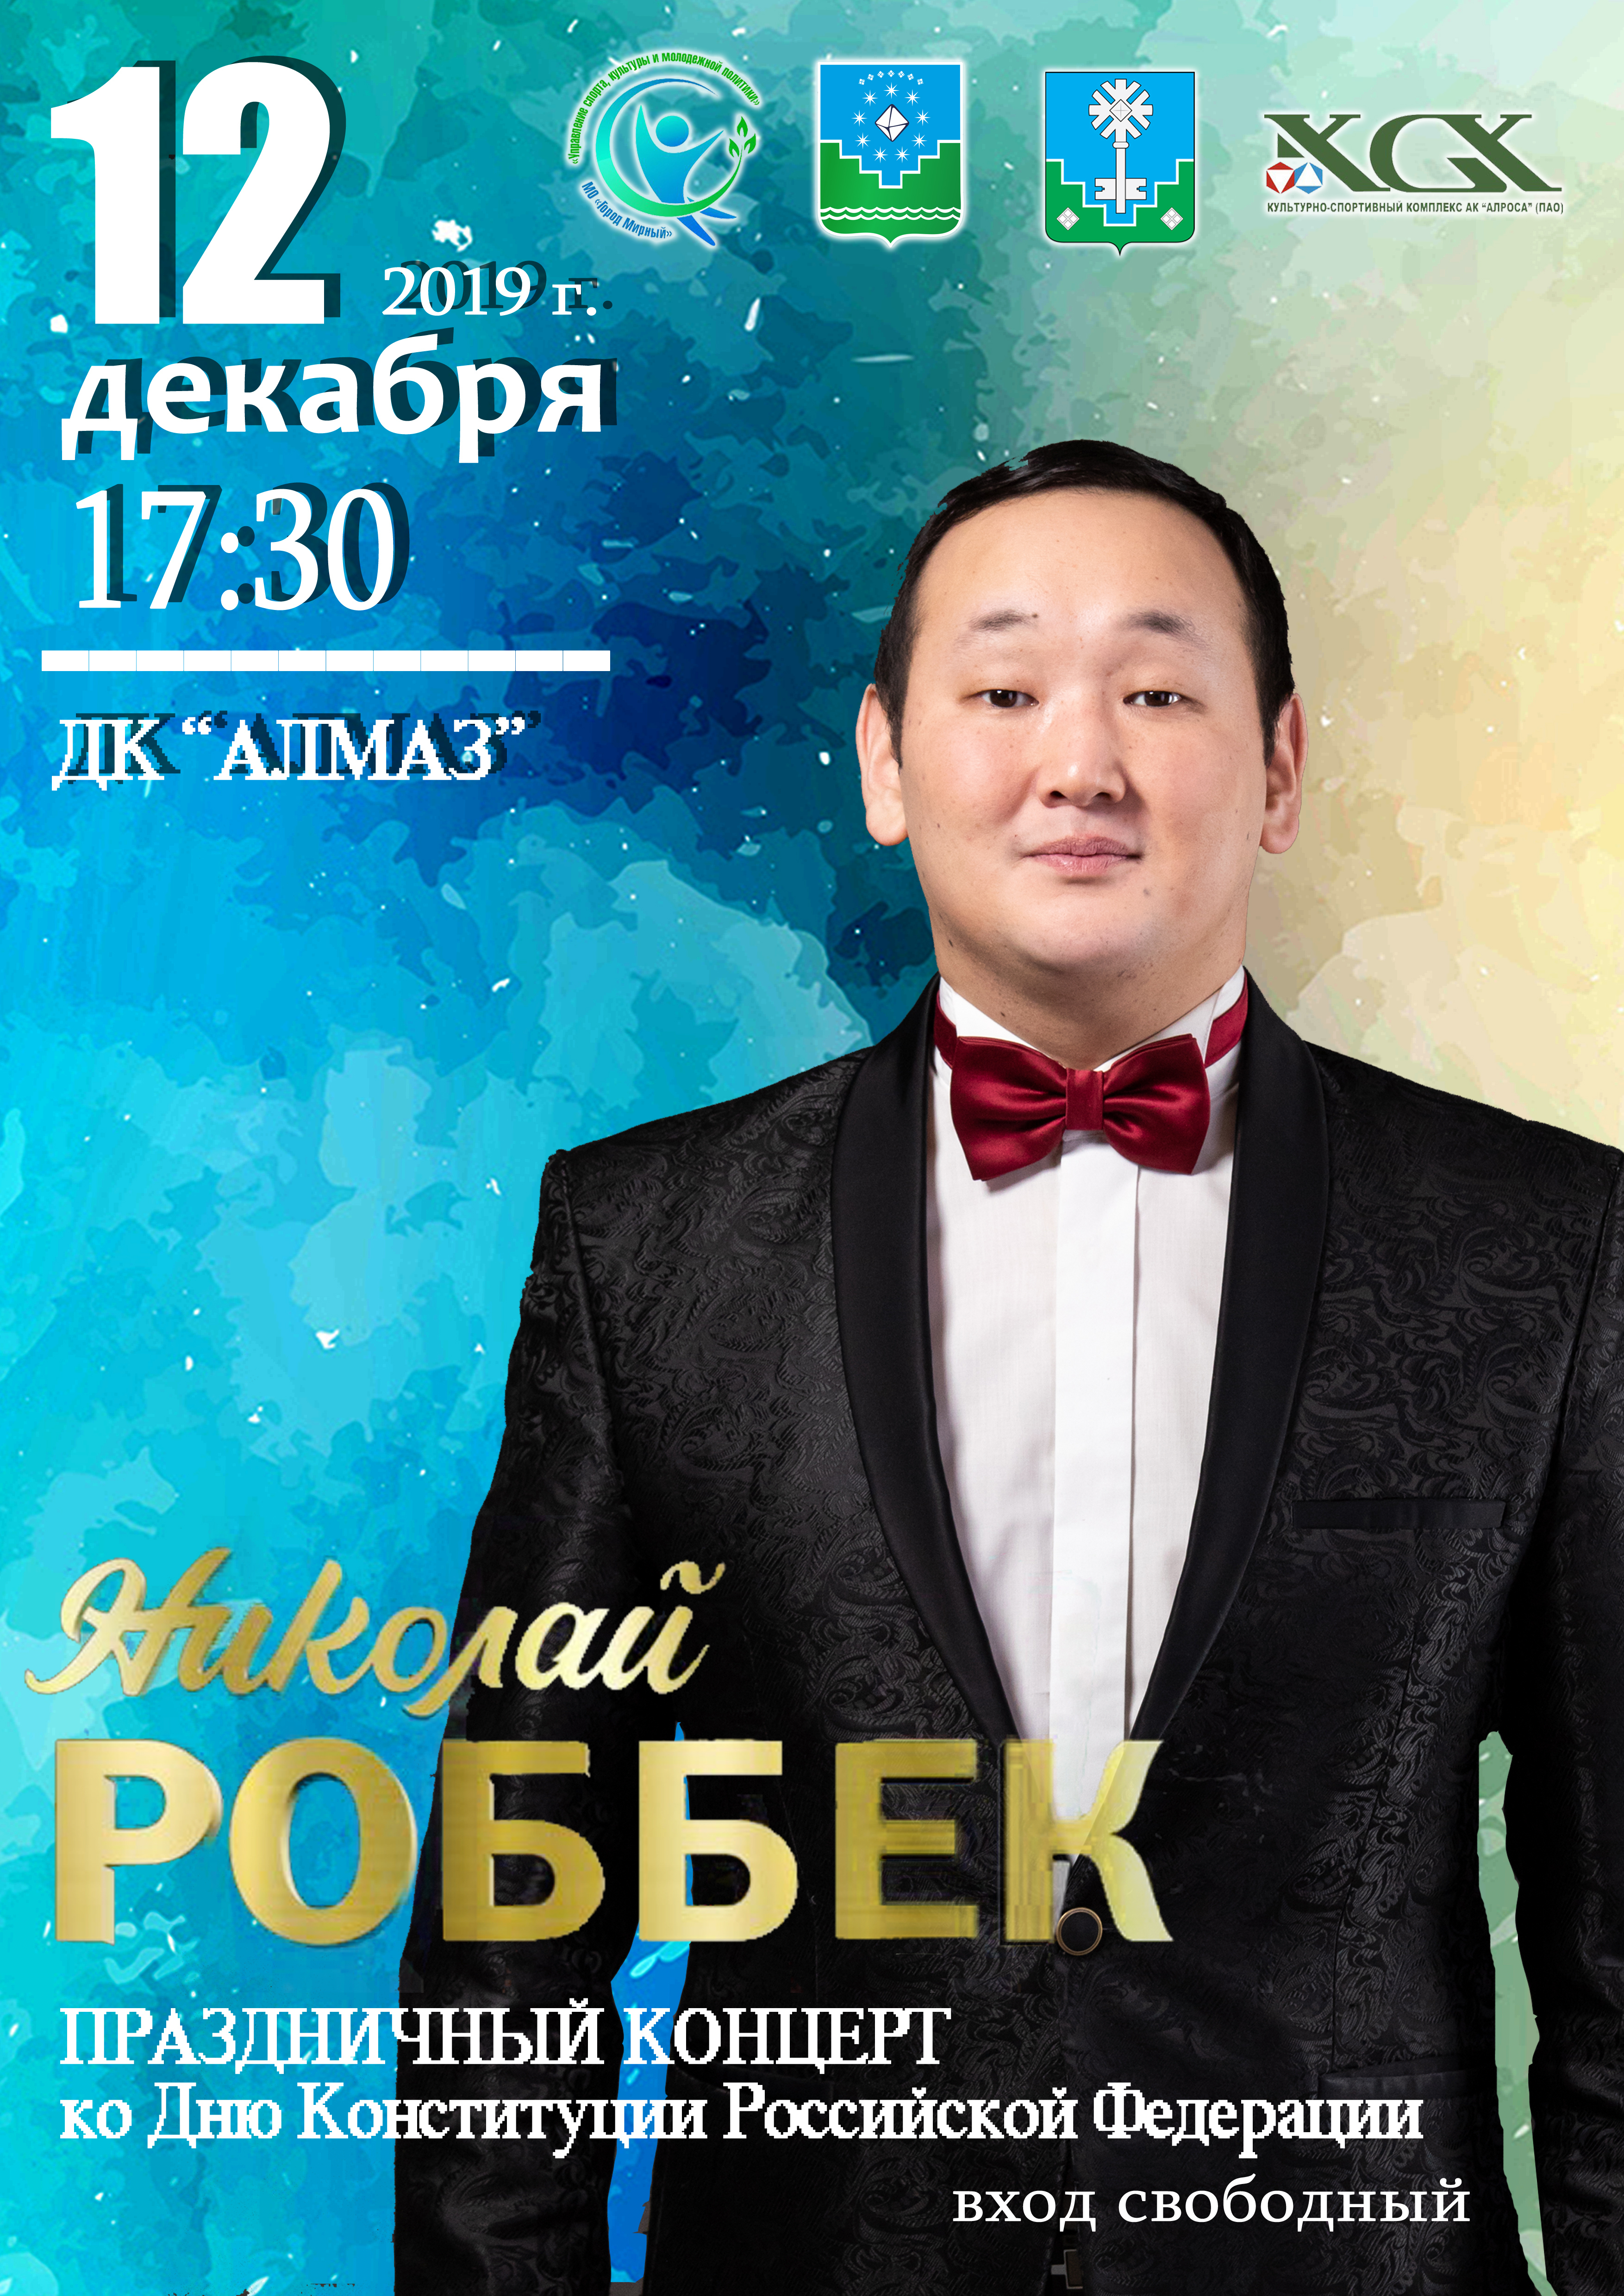 Праздничный концерт ко дню Конституции Российской Федерации